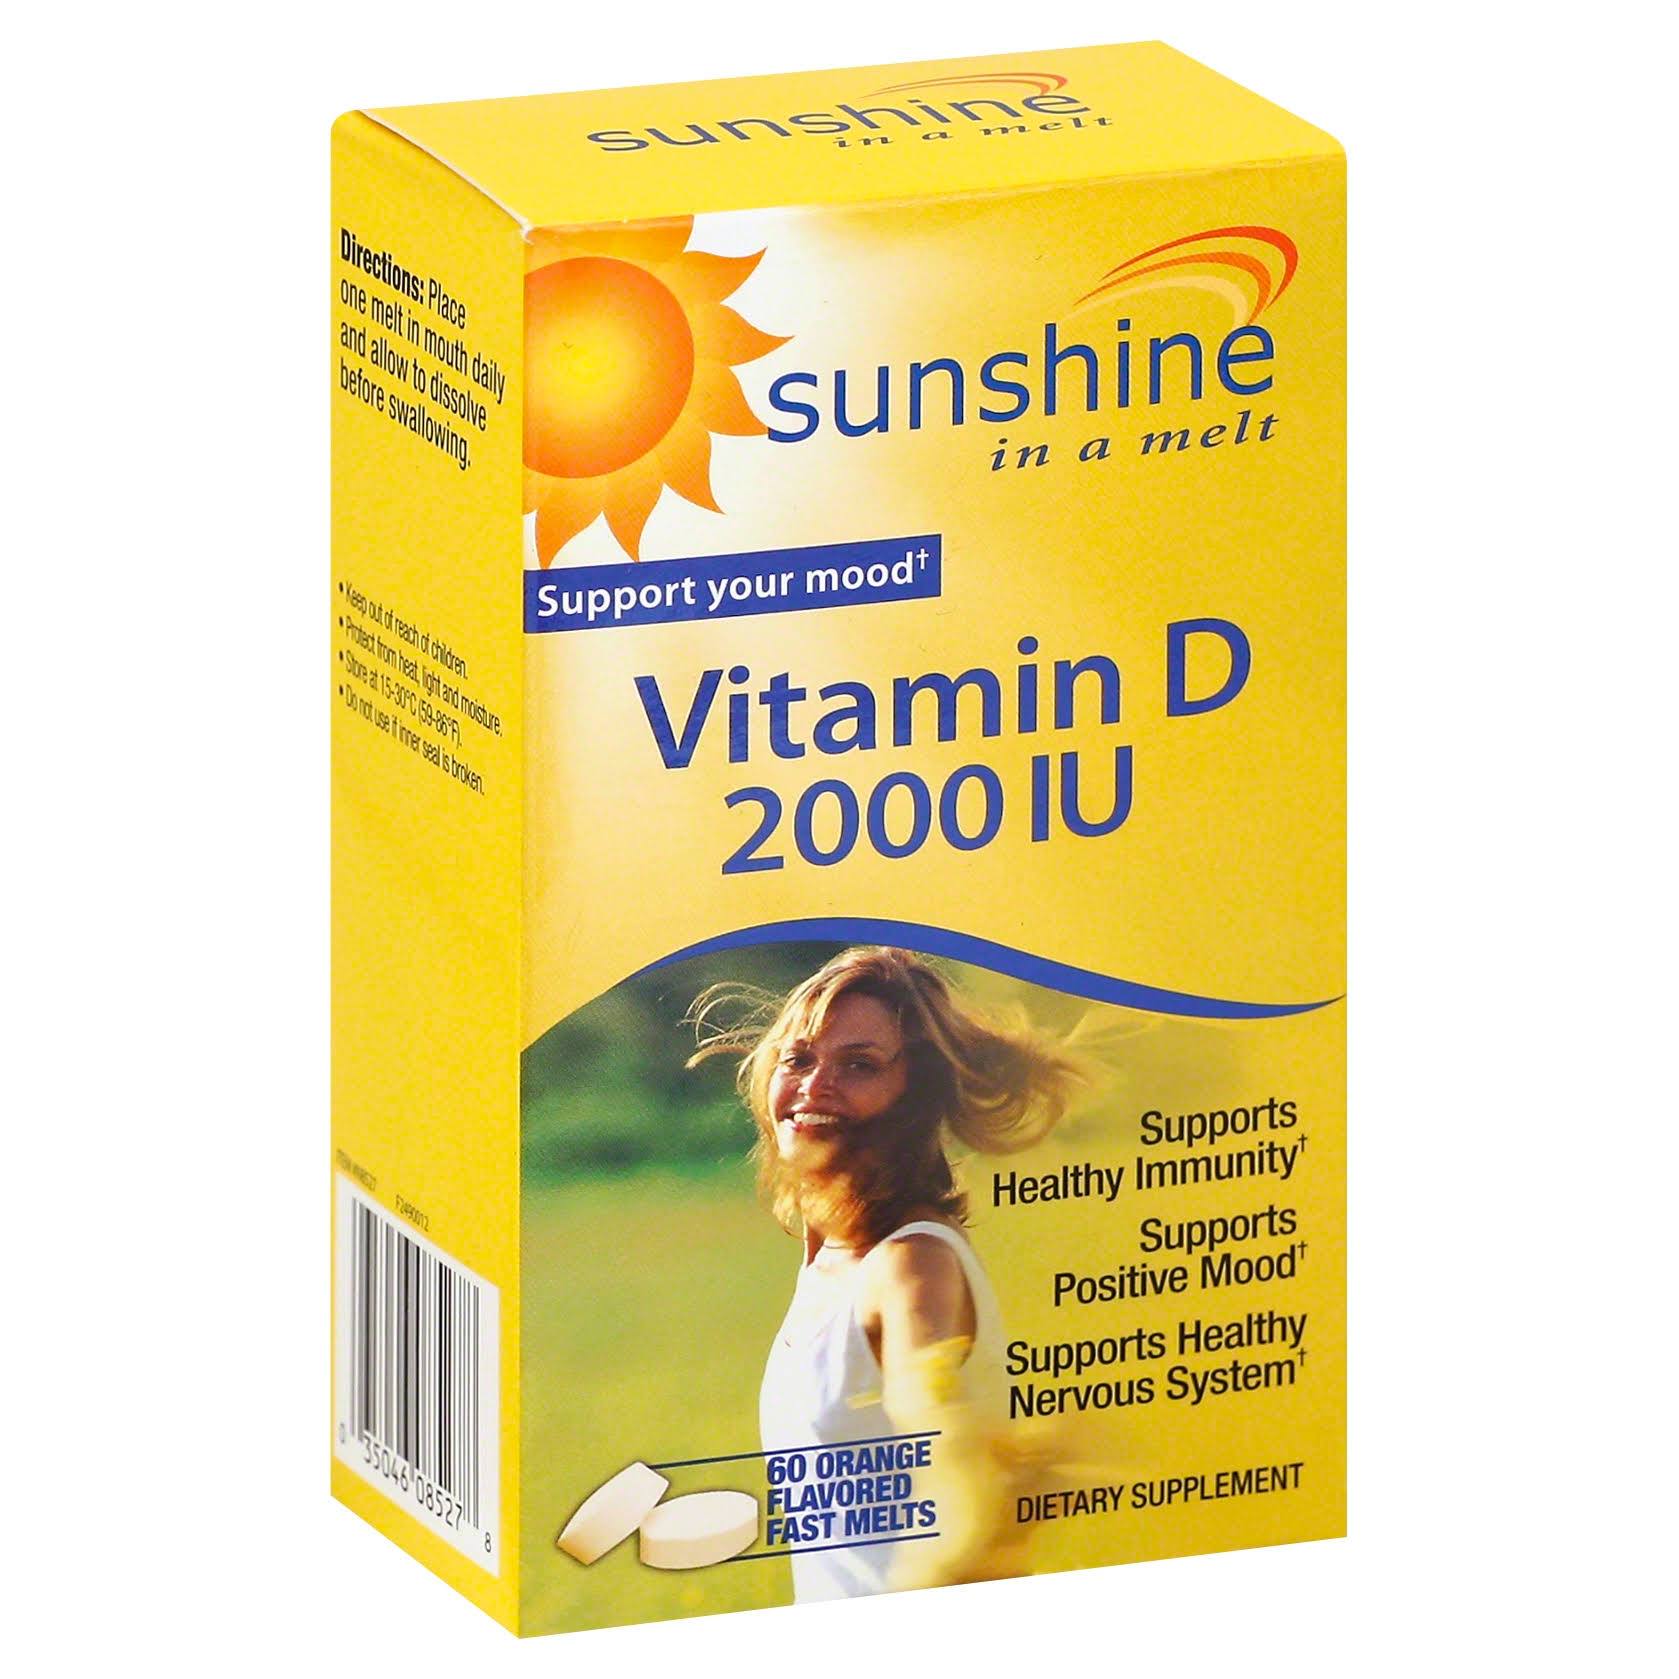 Windmill Sunshine Melt Vitamin D 2000IU - 60 ct